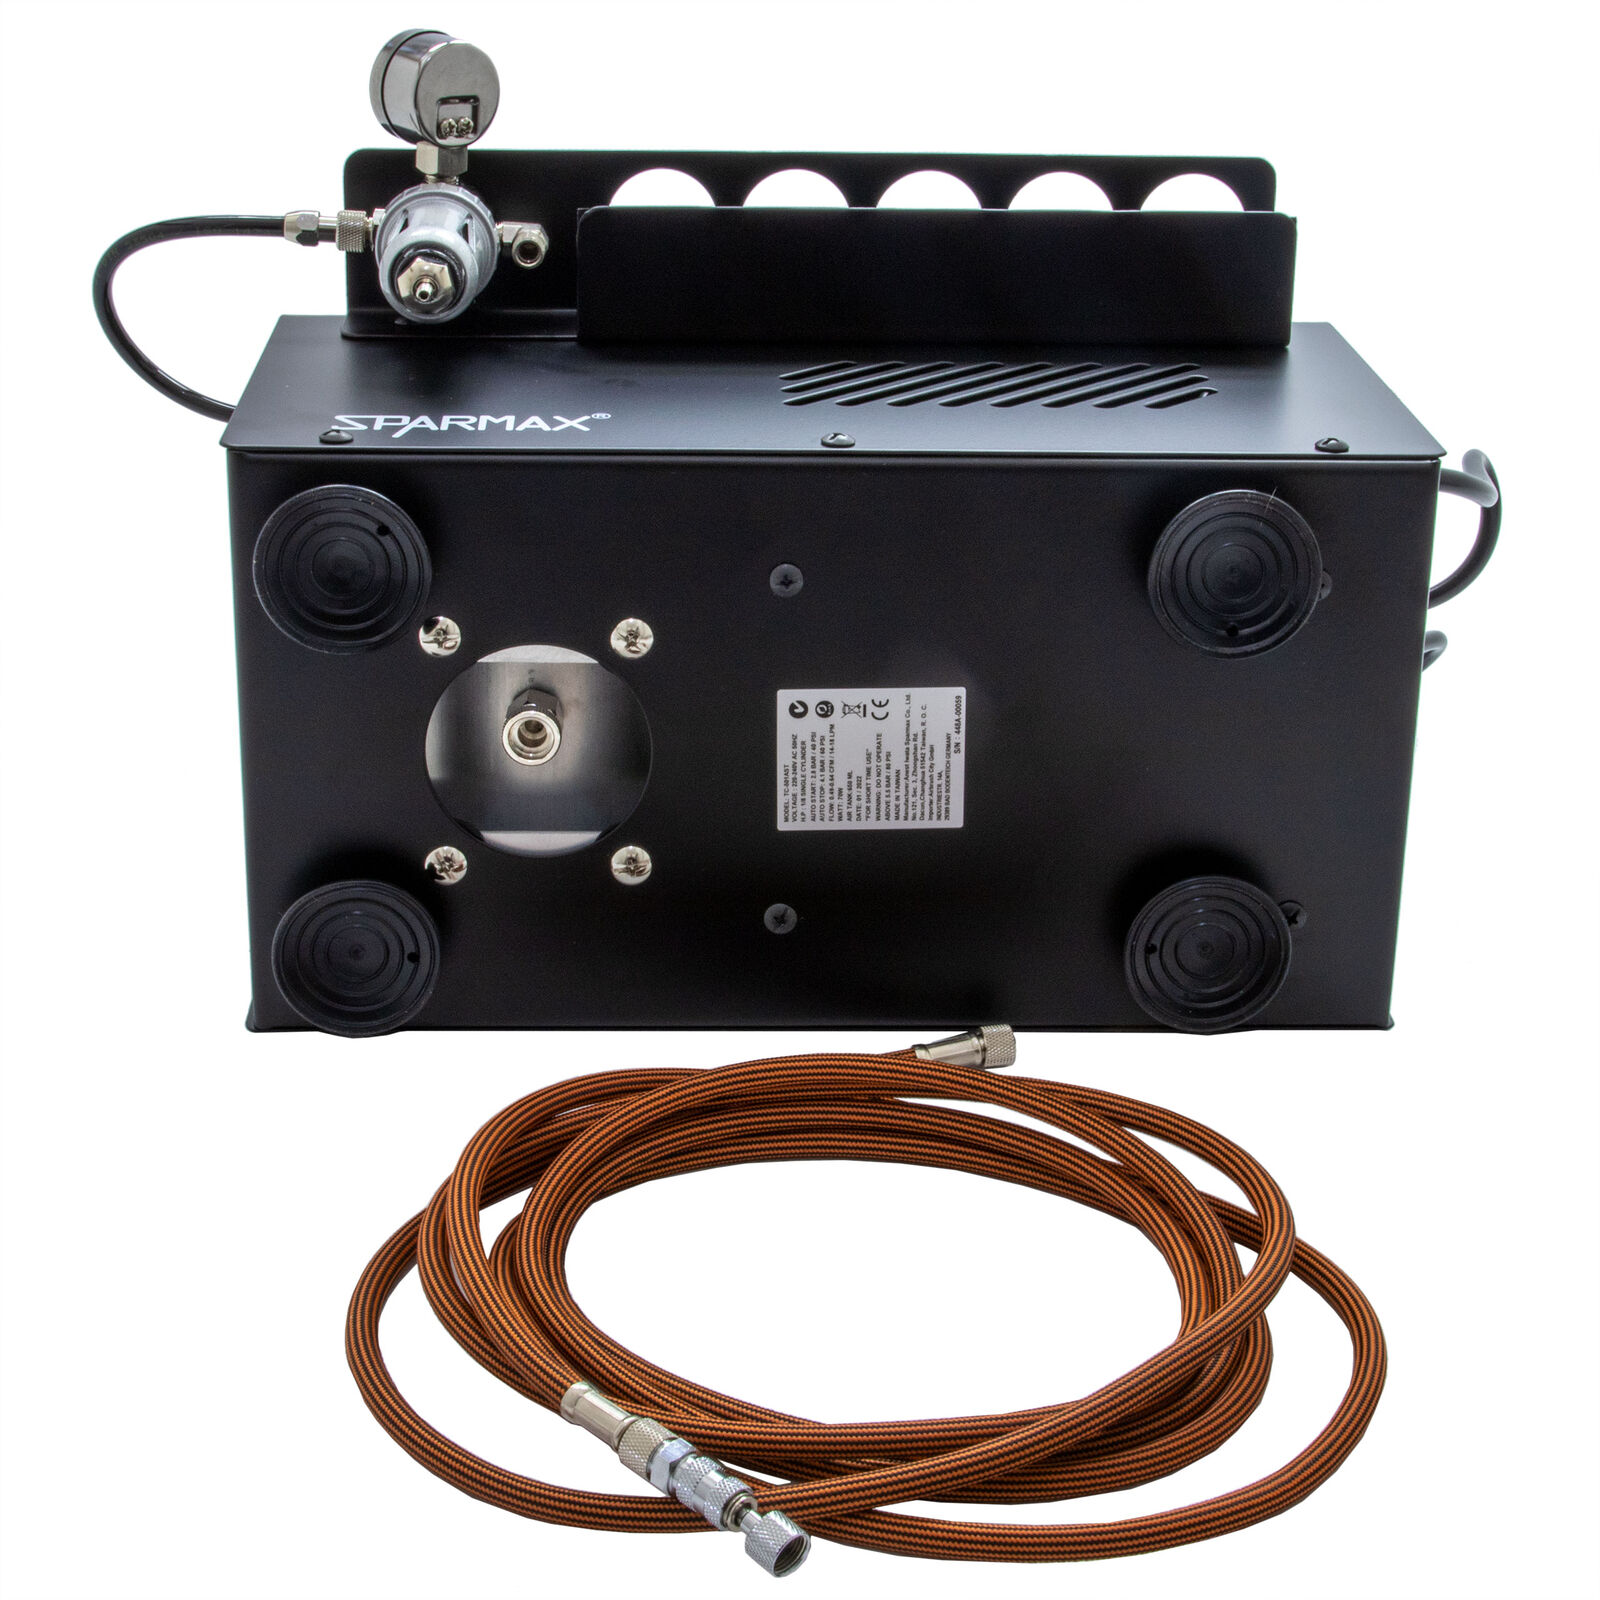 Silent Airbrush Kompressor - Sparmax TC-501 AST in schwarz mit Wasserabscheider